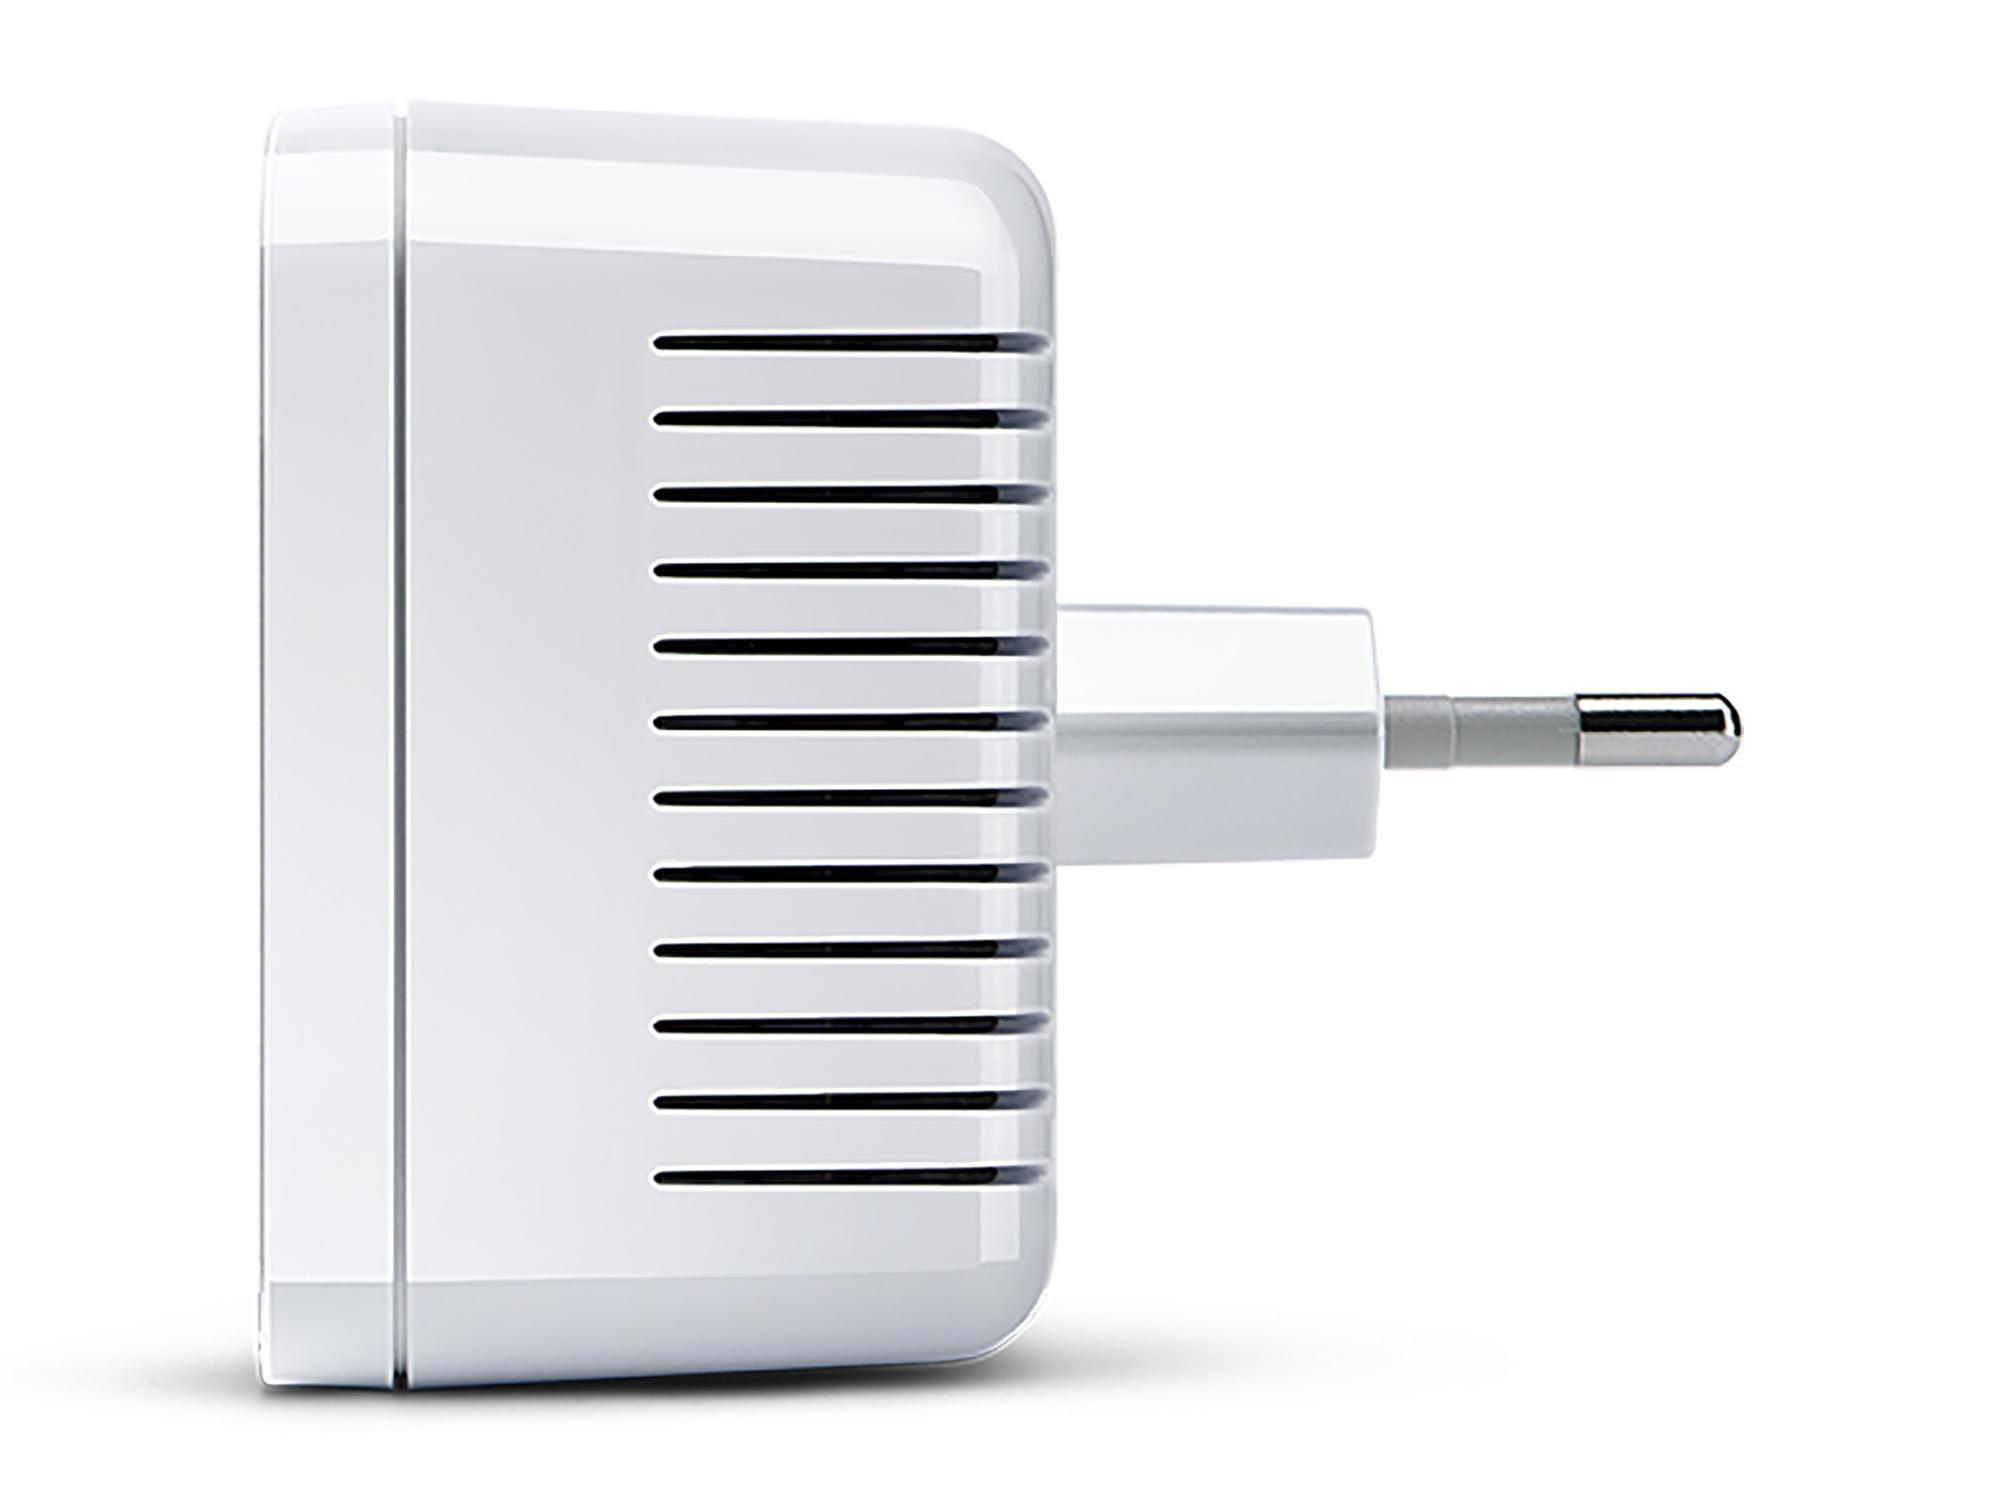 LAN Magic + Adapter Kit Powerline Kabellos Kabelgebunden 1200 1 WiFi 1 DEVOLO und Magic Multiroom Mbit/s Mini